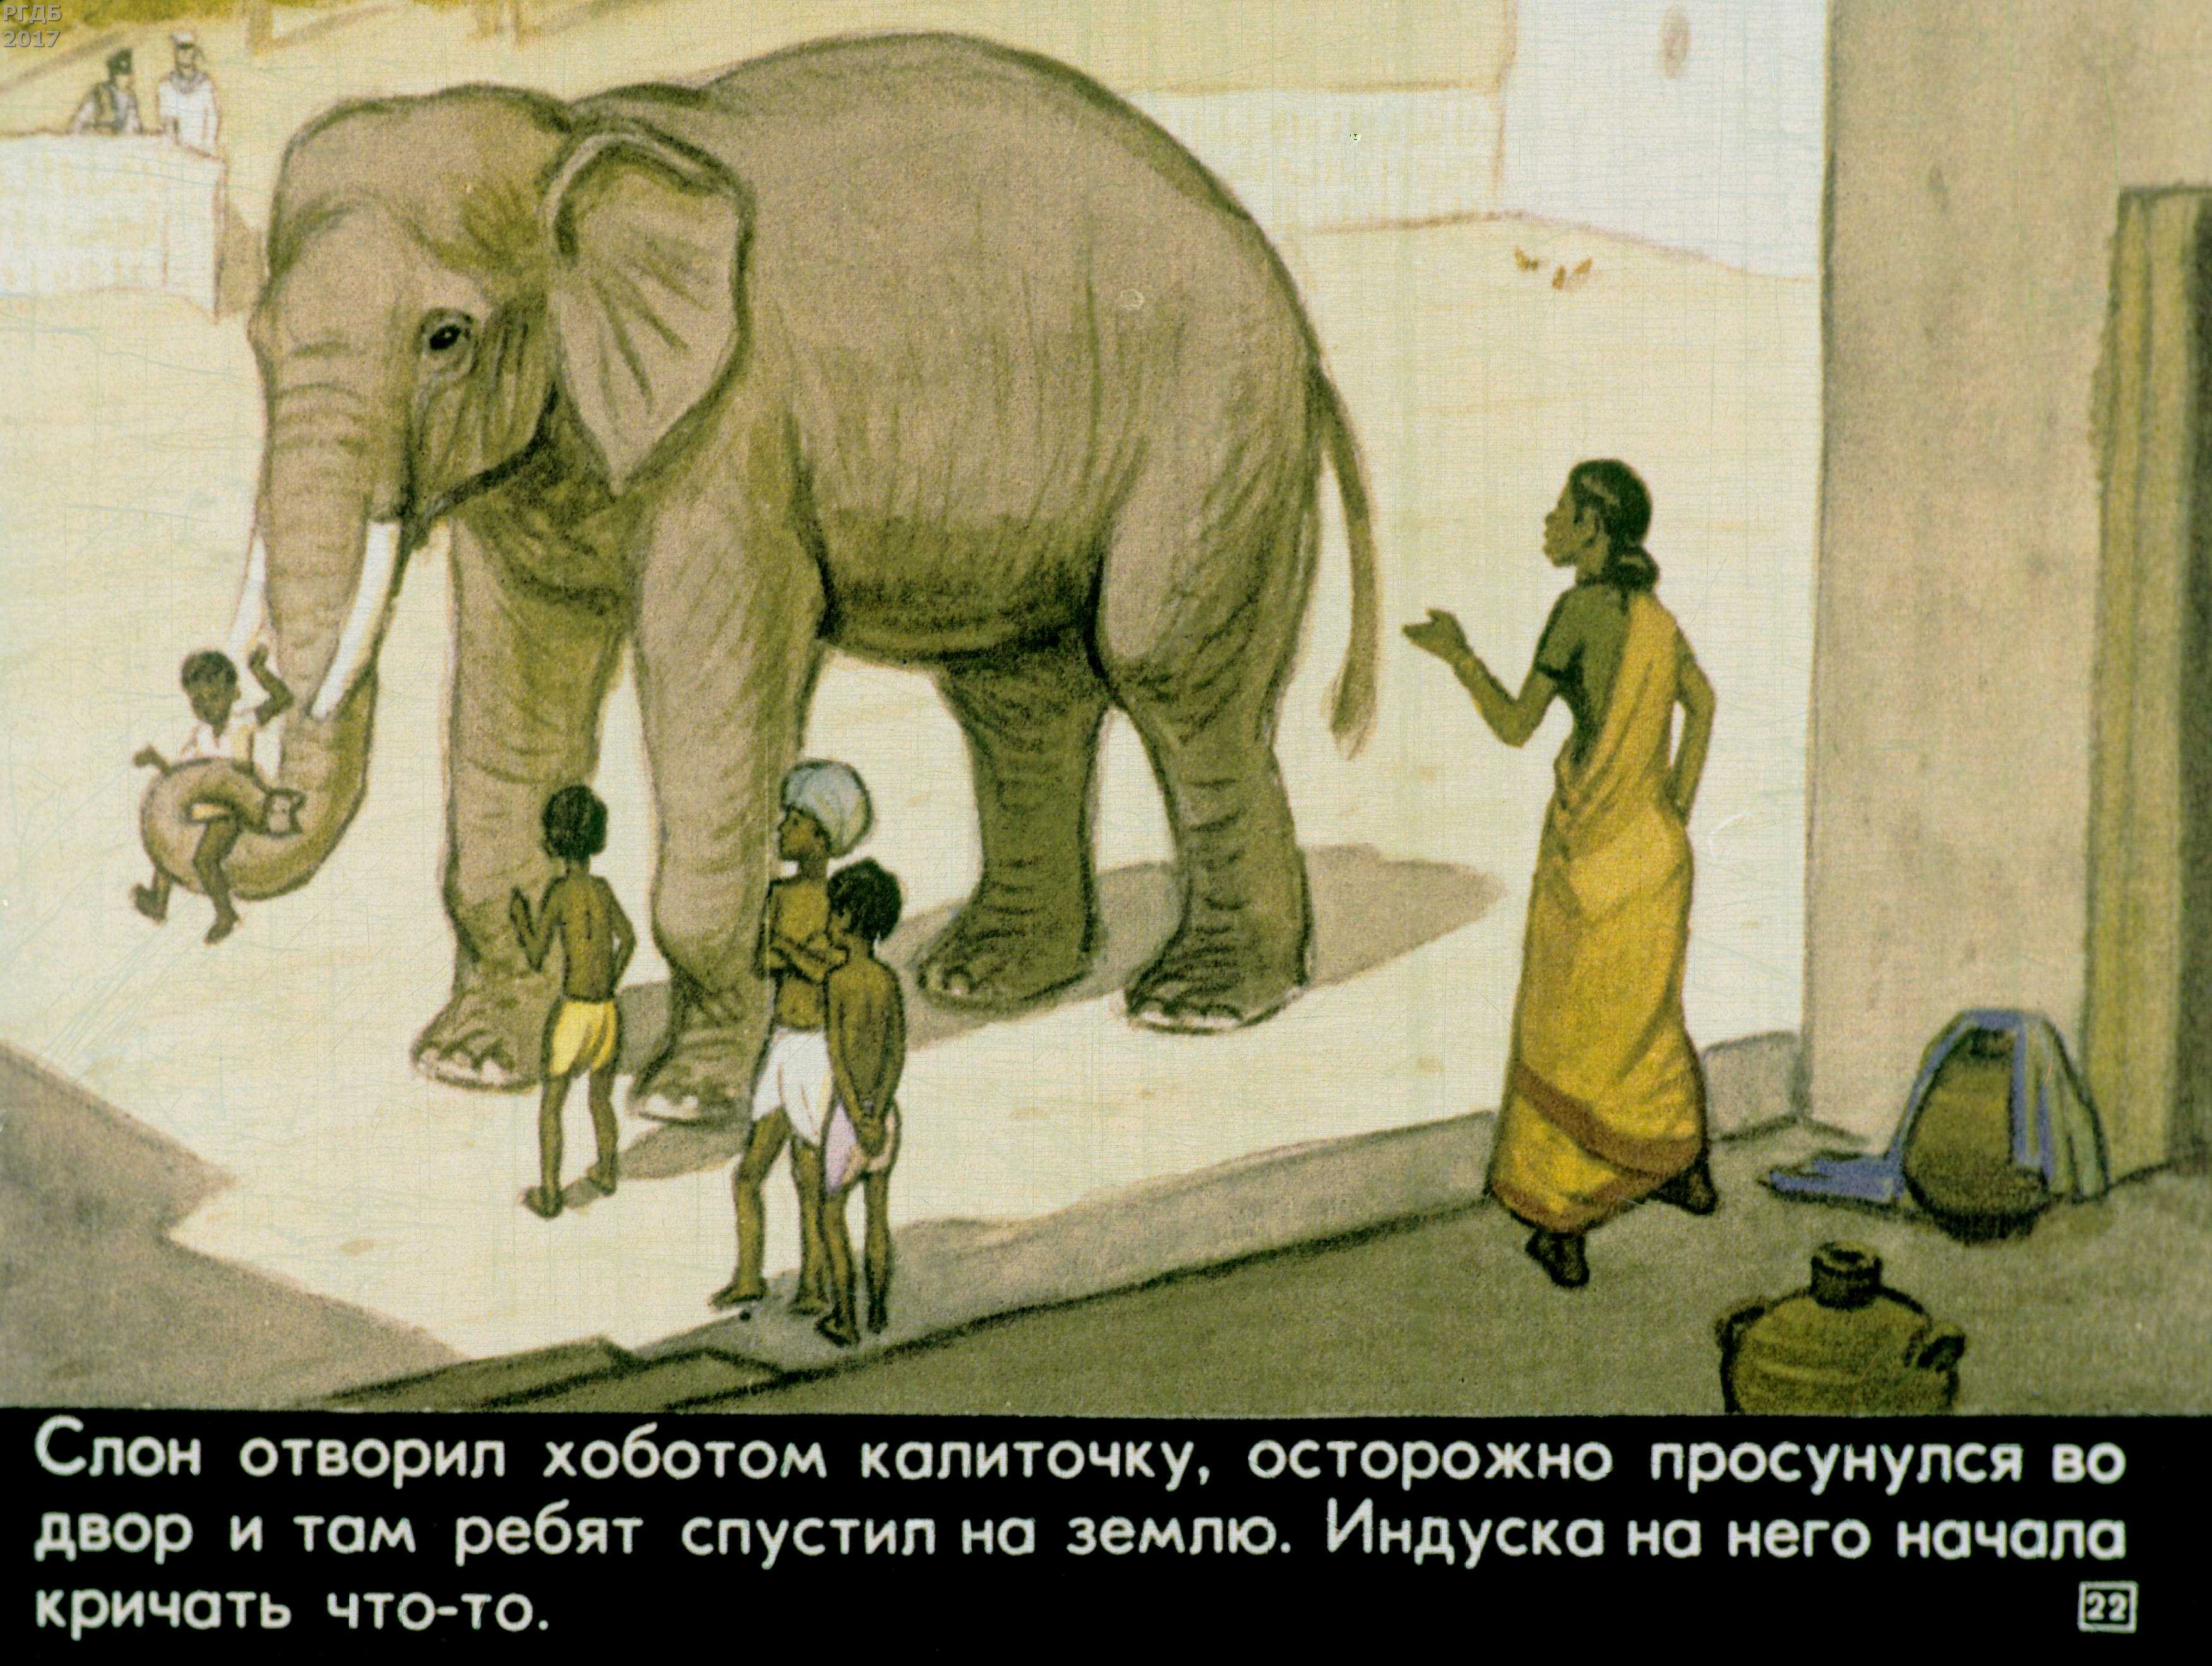 Читательский дневник про слона. Куприн а. и. "слон". Иллюстрации к рассказу Житкова про слона. Иллюстрация к рассказу про слона Житков.